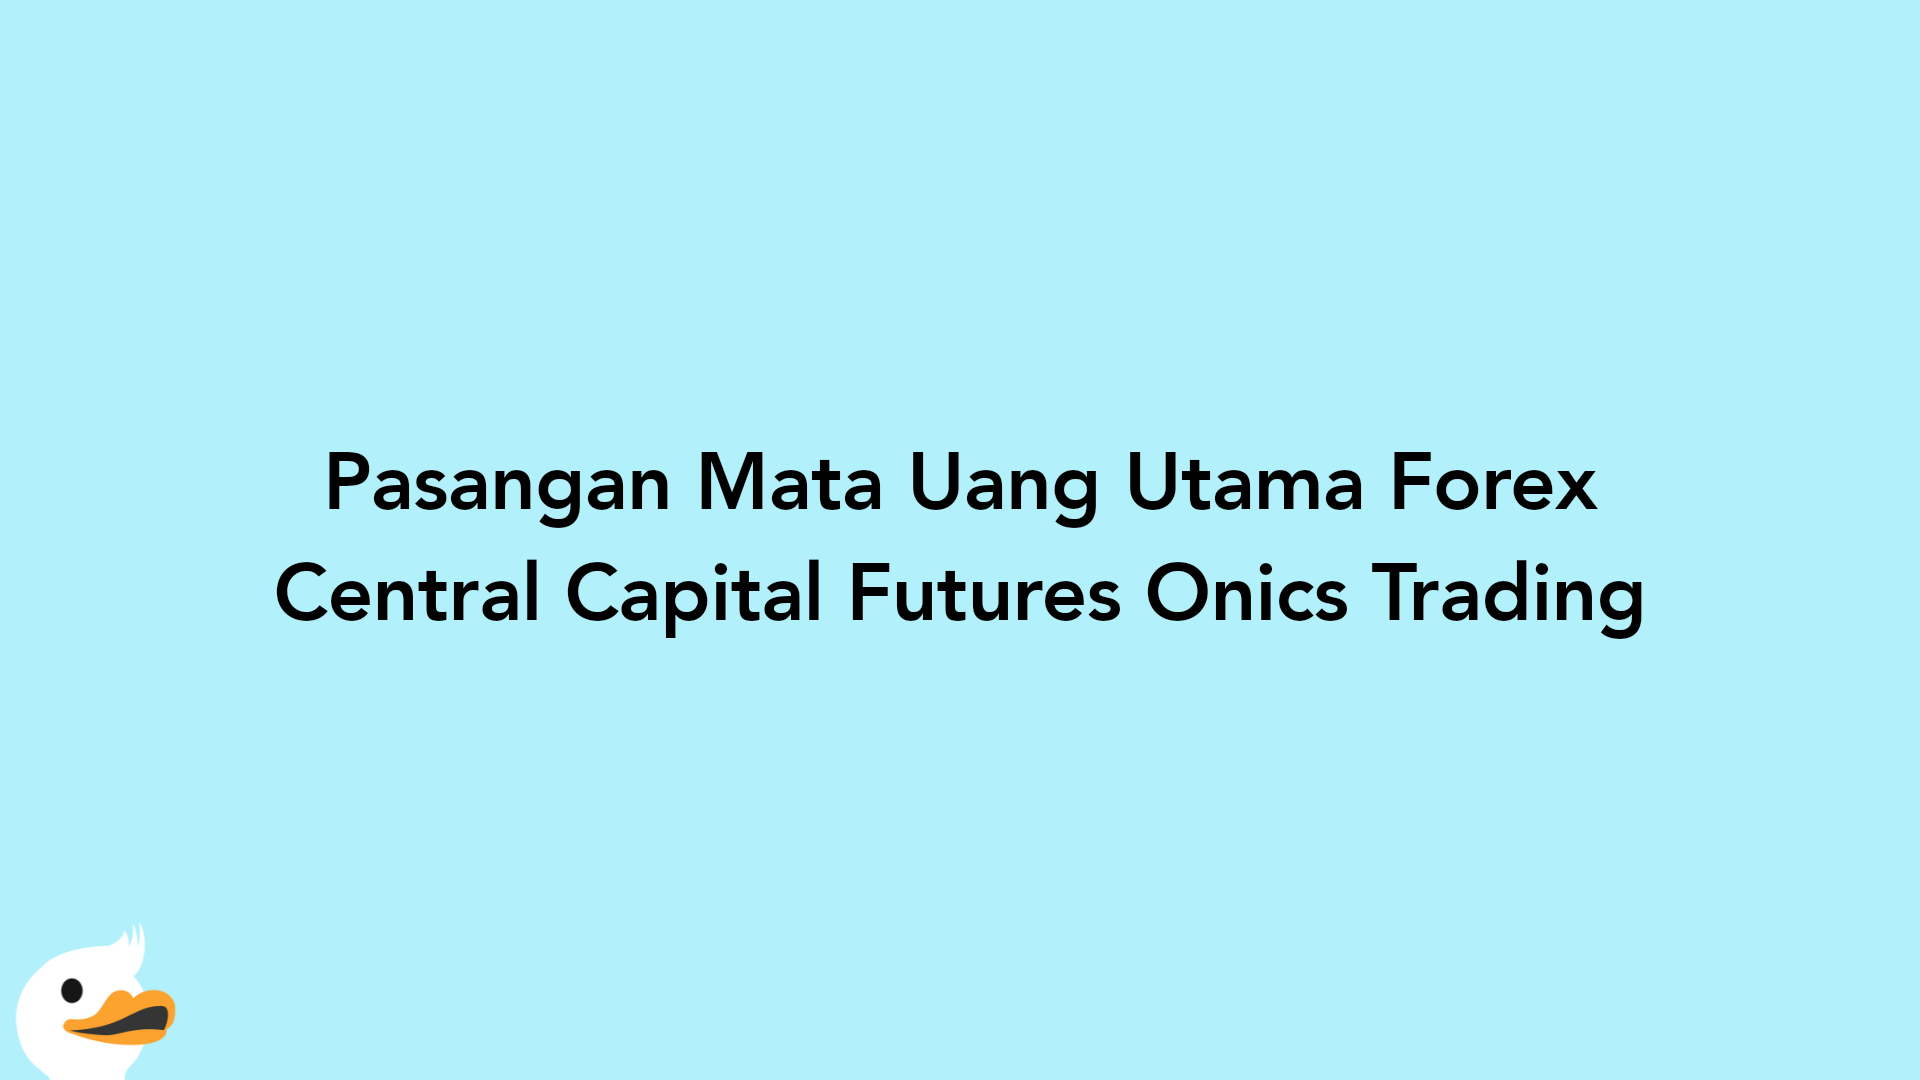 Pasangan Mata Uang Utama Forex Central Capital Futures Onics Trading